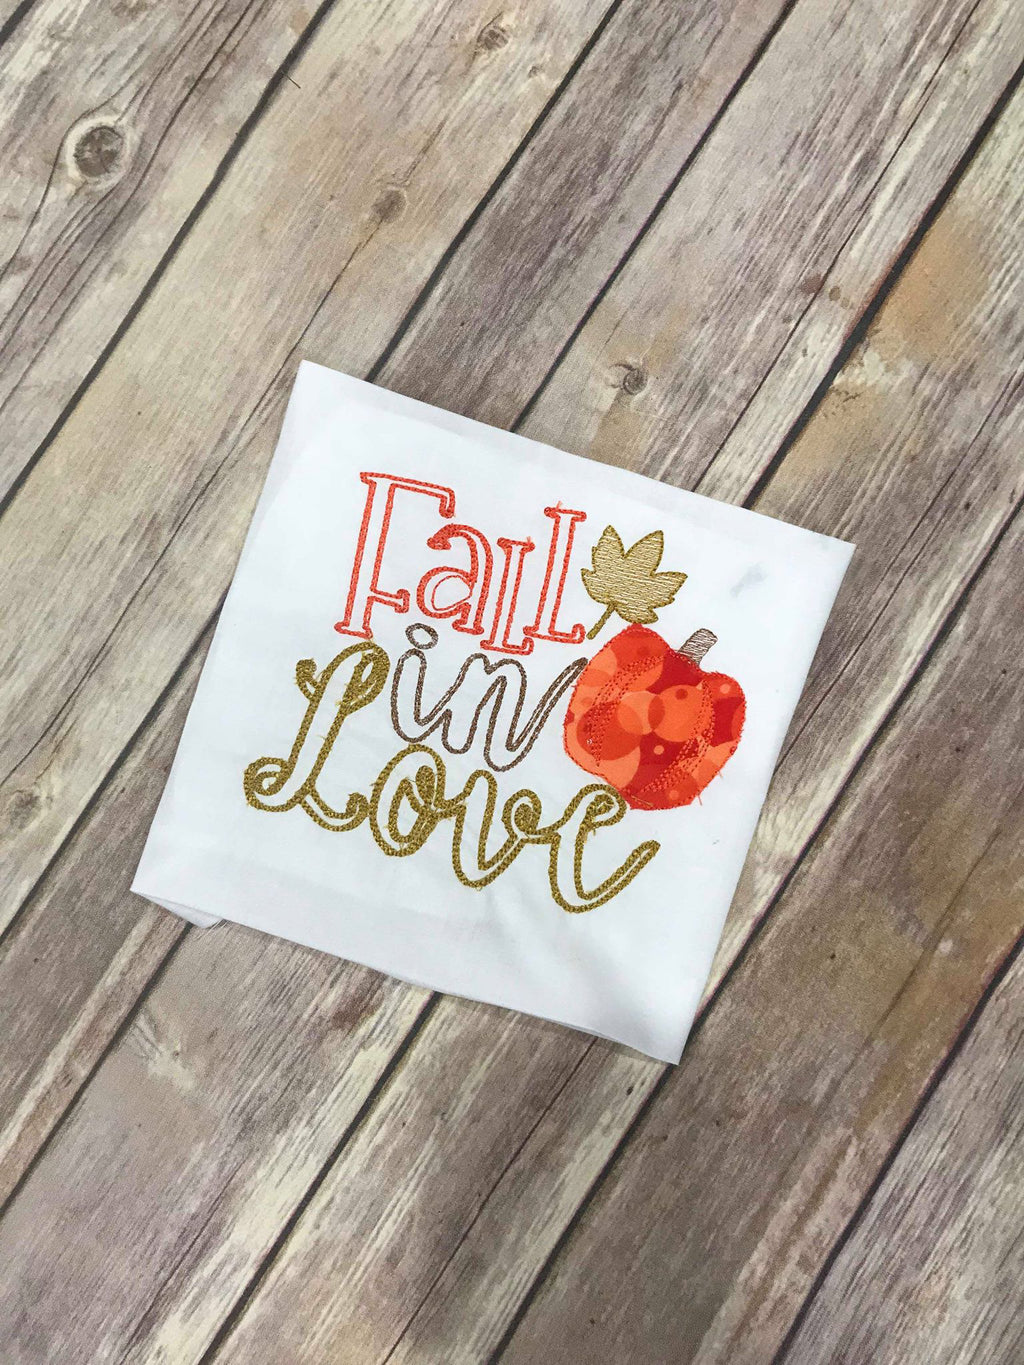 Fall in love pumpkin bean stitch machine applique embroidery design 5x5